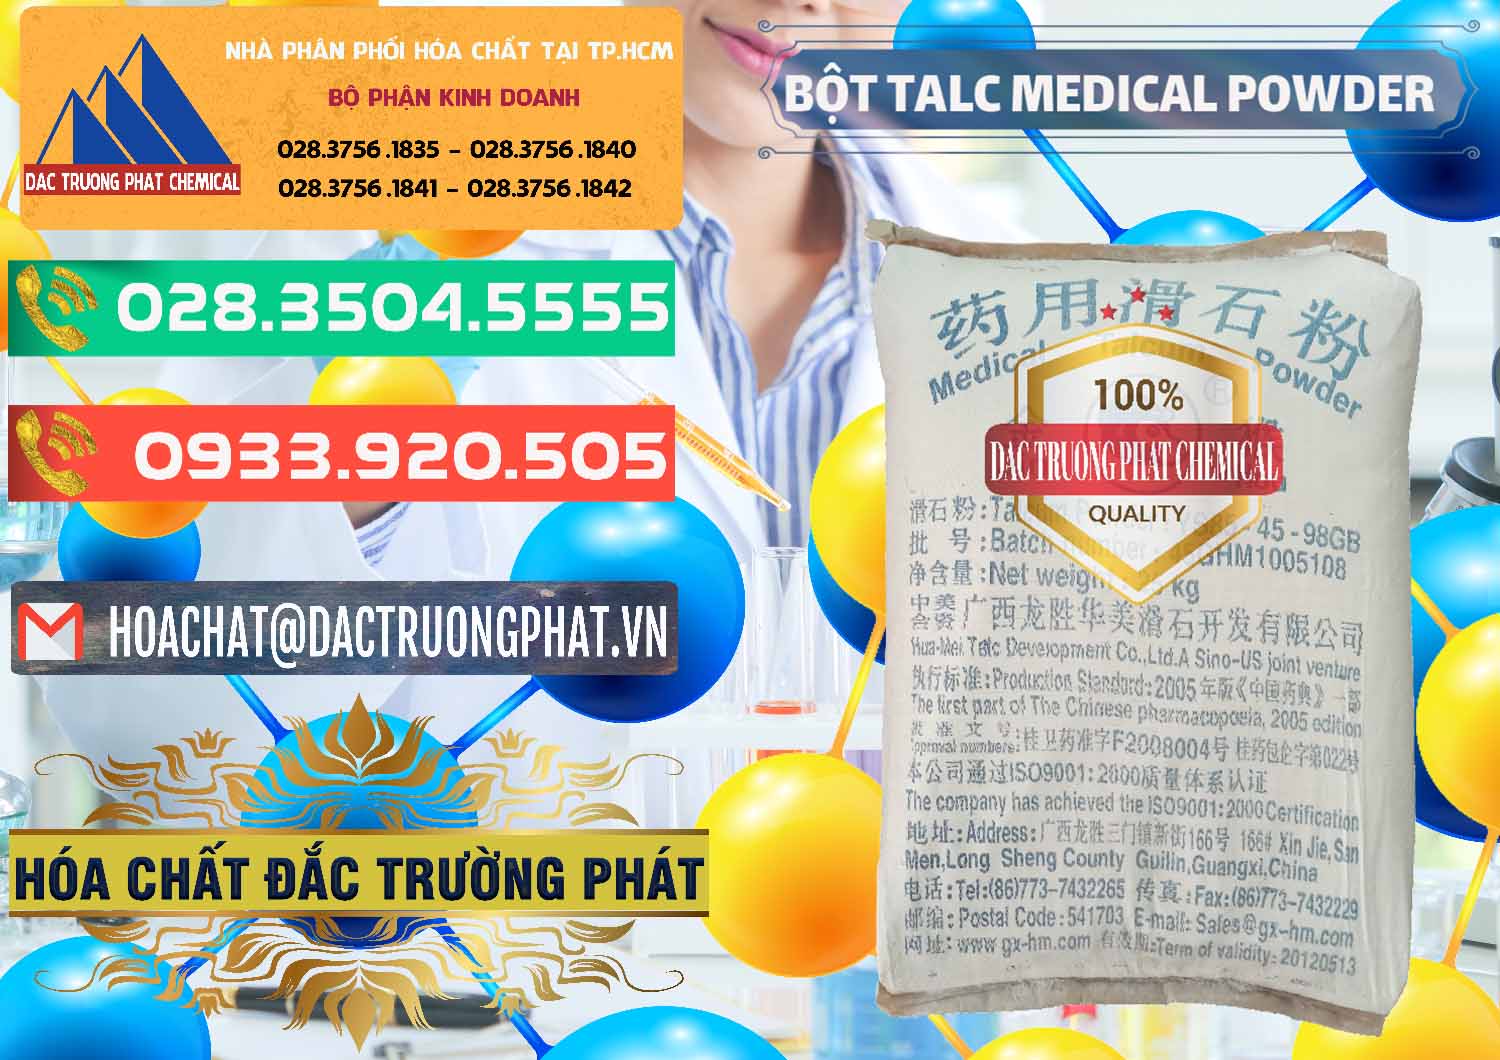 Nơi nhập khẩu & bán Bột Talc Medical Powder Trung Quốc China - 0036 - Công ty chuyên nhập khẩu ( cung cấp ) hóa chất tại TP.HCM - congtyhoachat.com.vn